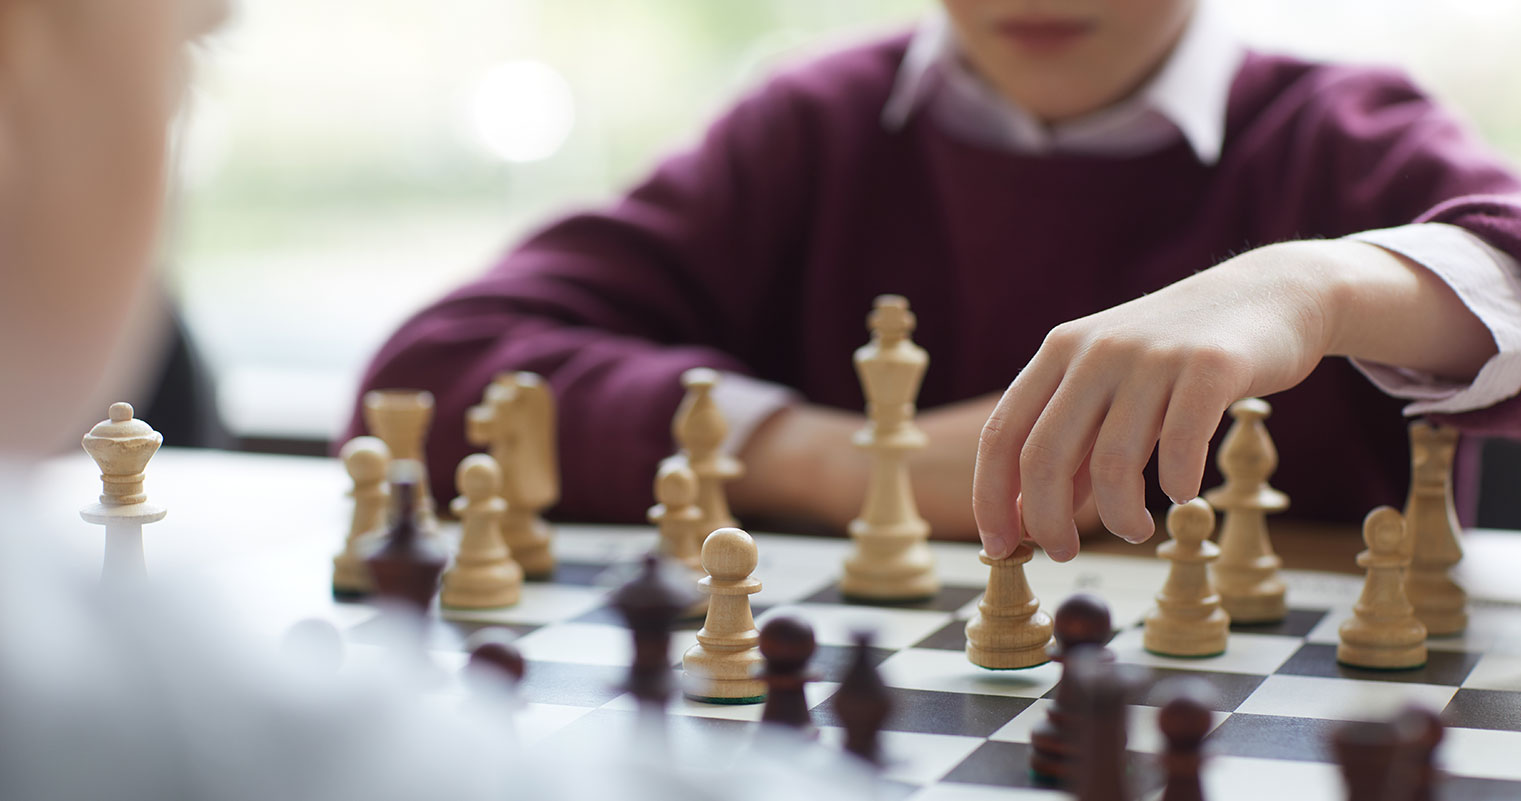  çocuklara satranç nasıl öğretilir